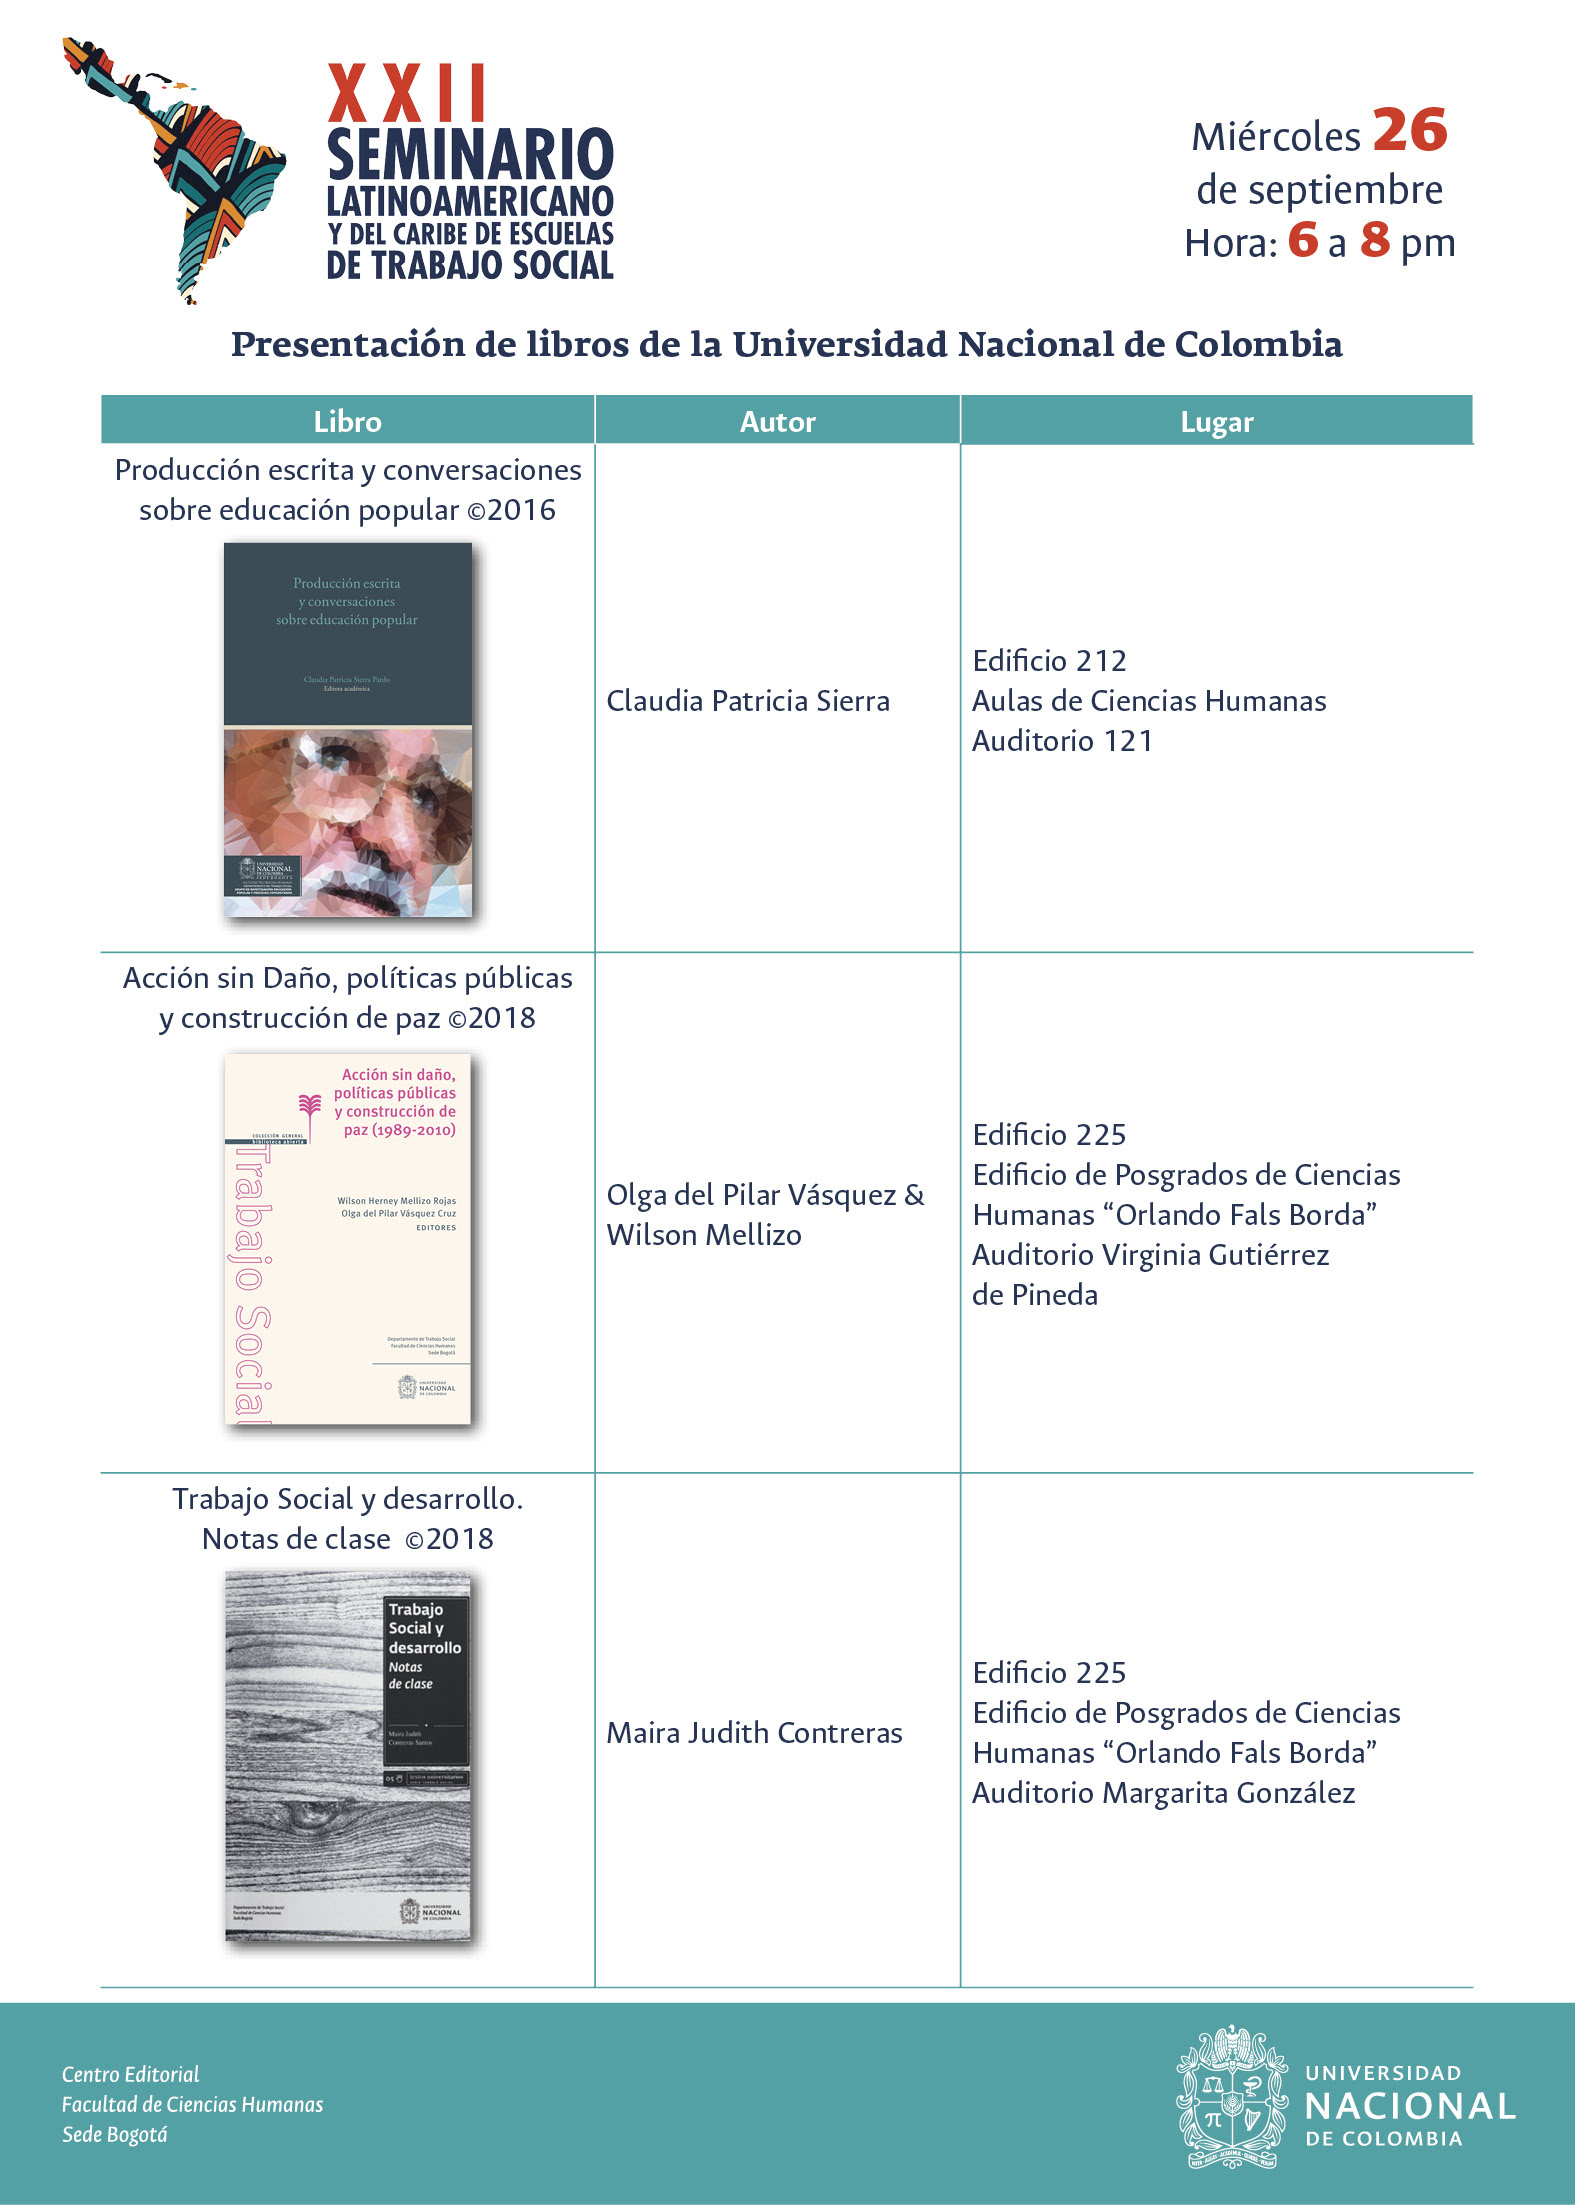 Presentación de libros de la Universidad Nacional de Colombia en el marco del XXII Seminario Latinoamericano y del Caribe de Escuelas de Trabajo Social